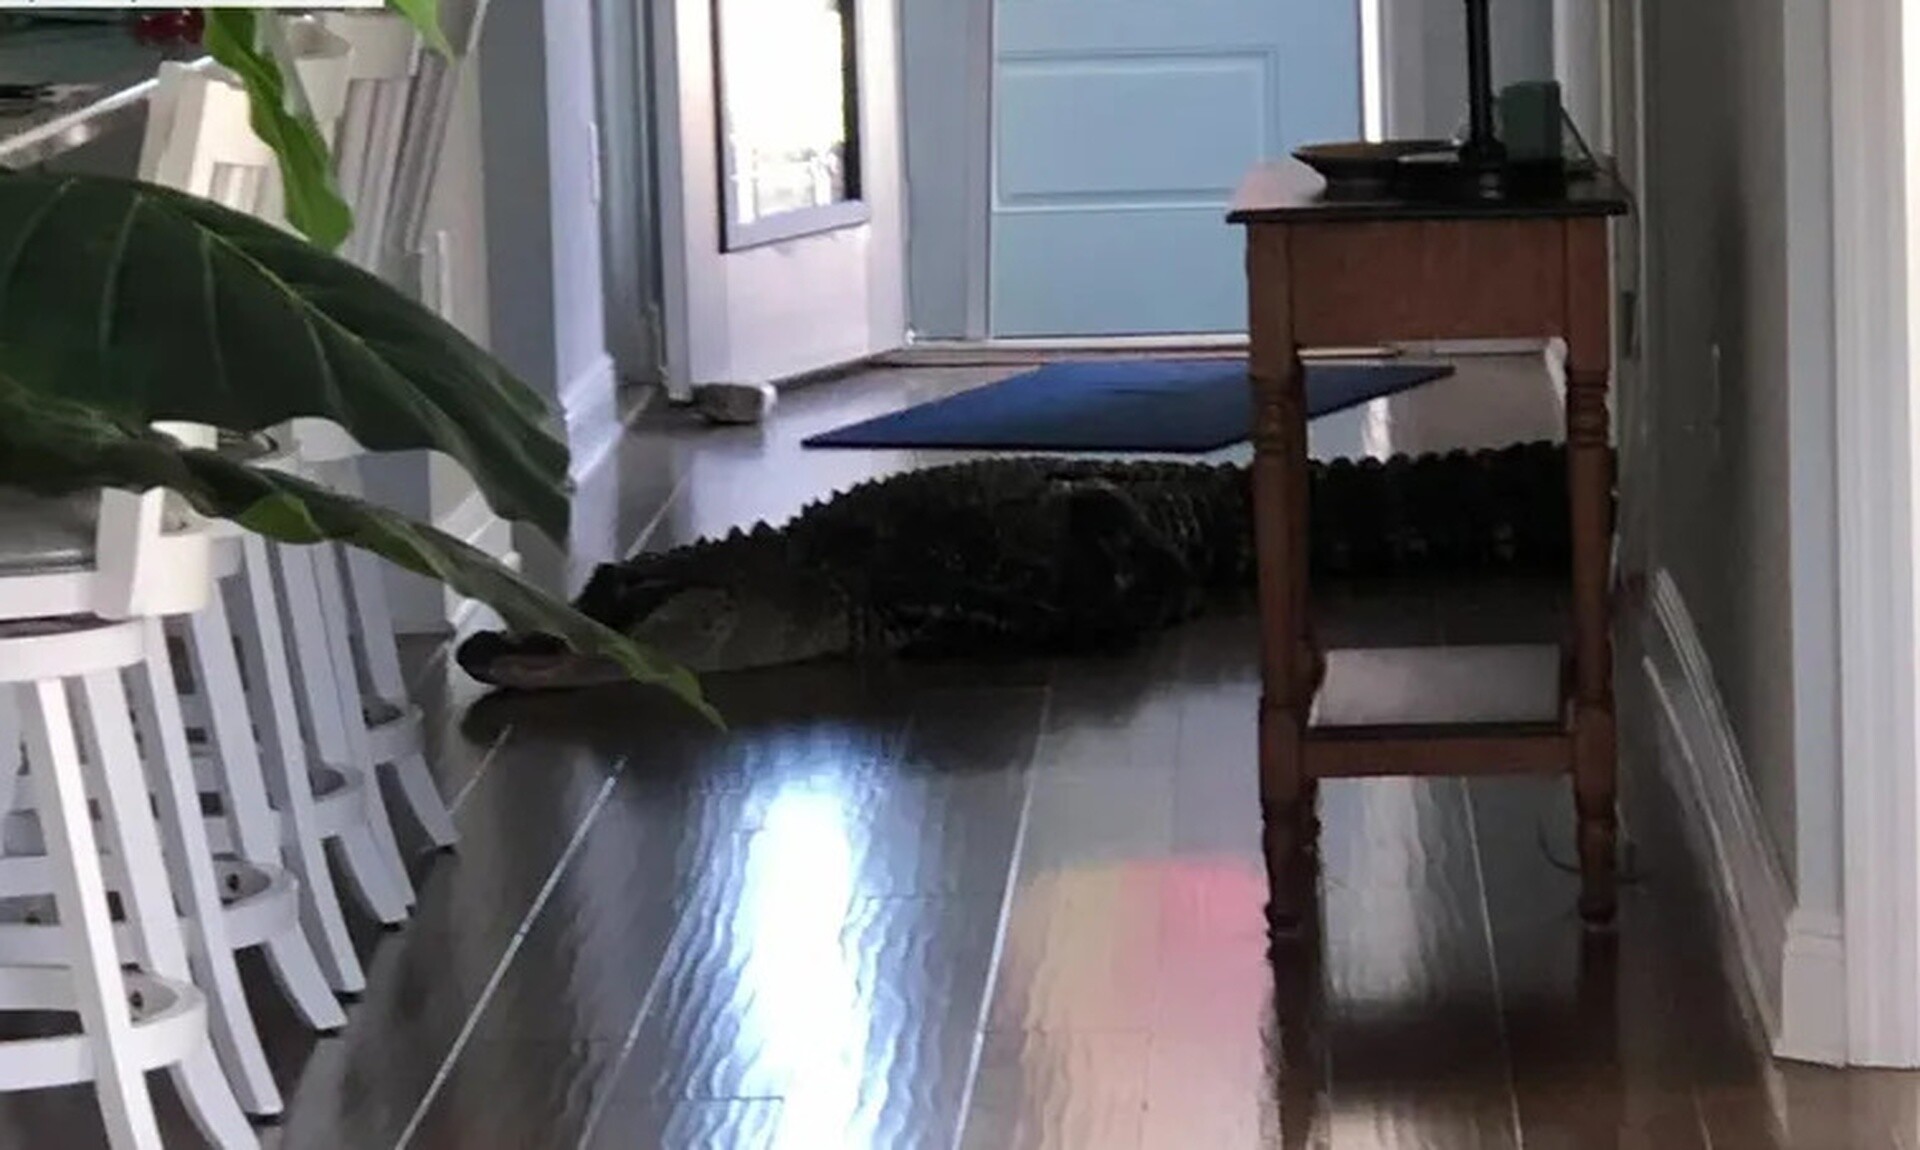 Φλόριντα: Αλιγάτορας μήκους 2 μέτρων εισέβαλε σε σπίτι - «Έτρεμα τόσο πολύ δεν ήξερα τι να κάνω»